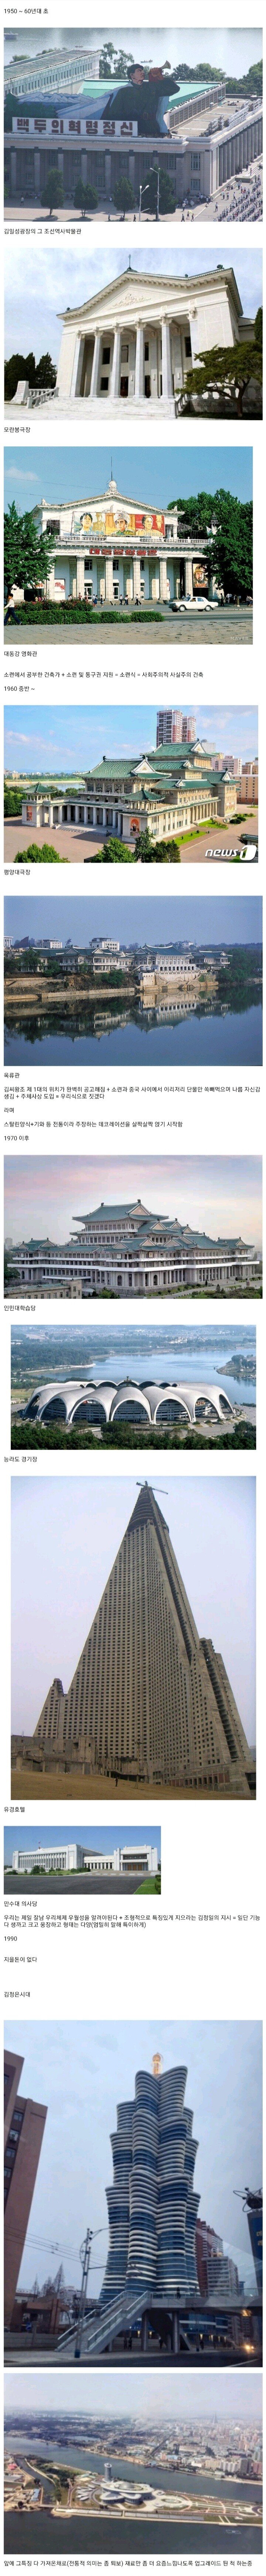 북한의 시대별 건축물과 특징